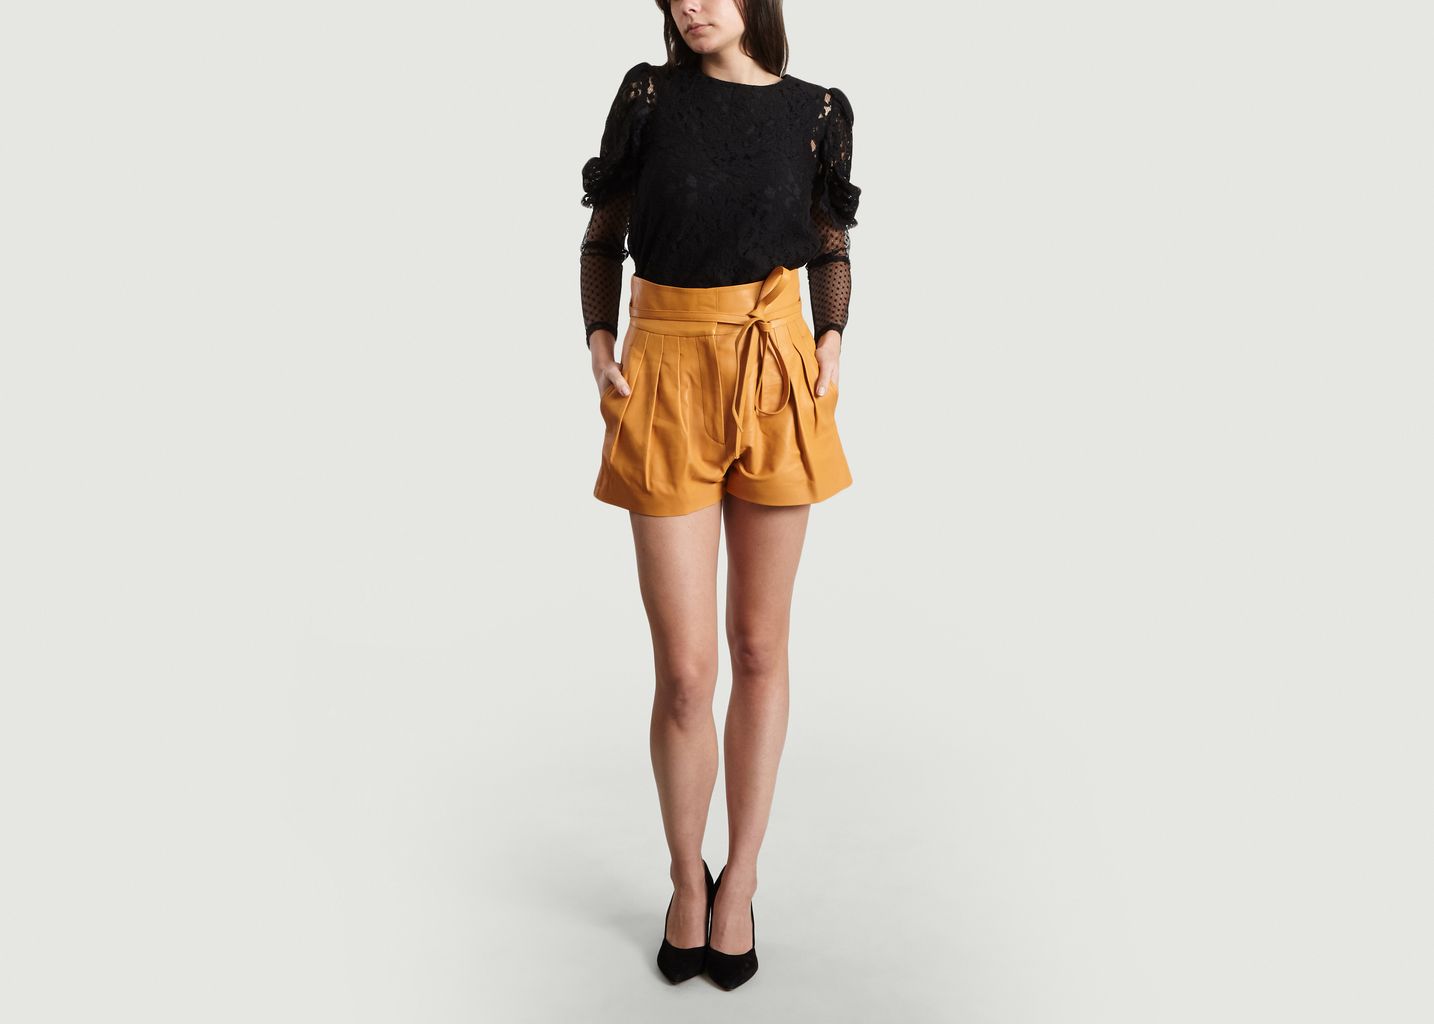 Tenacity Leather Shorts - IRO